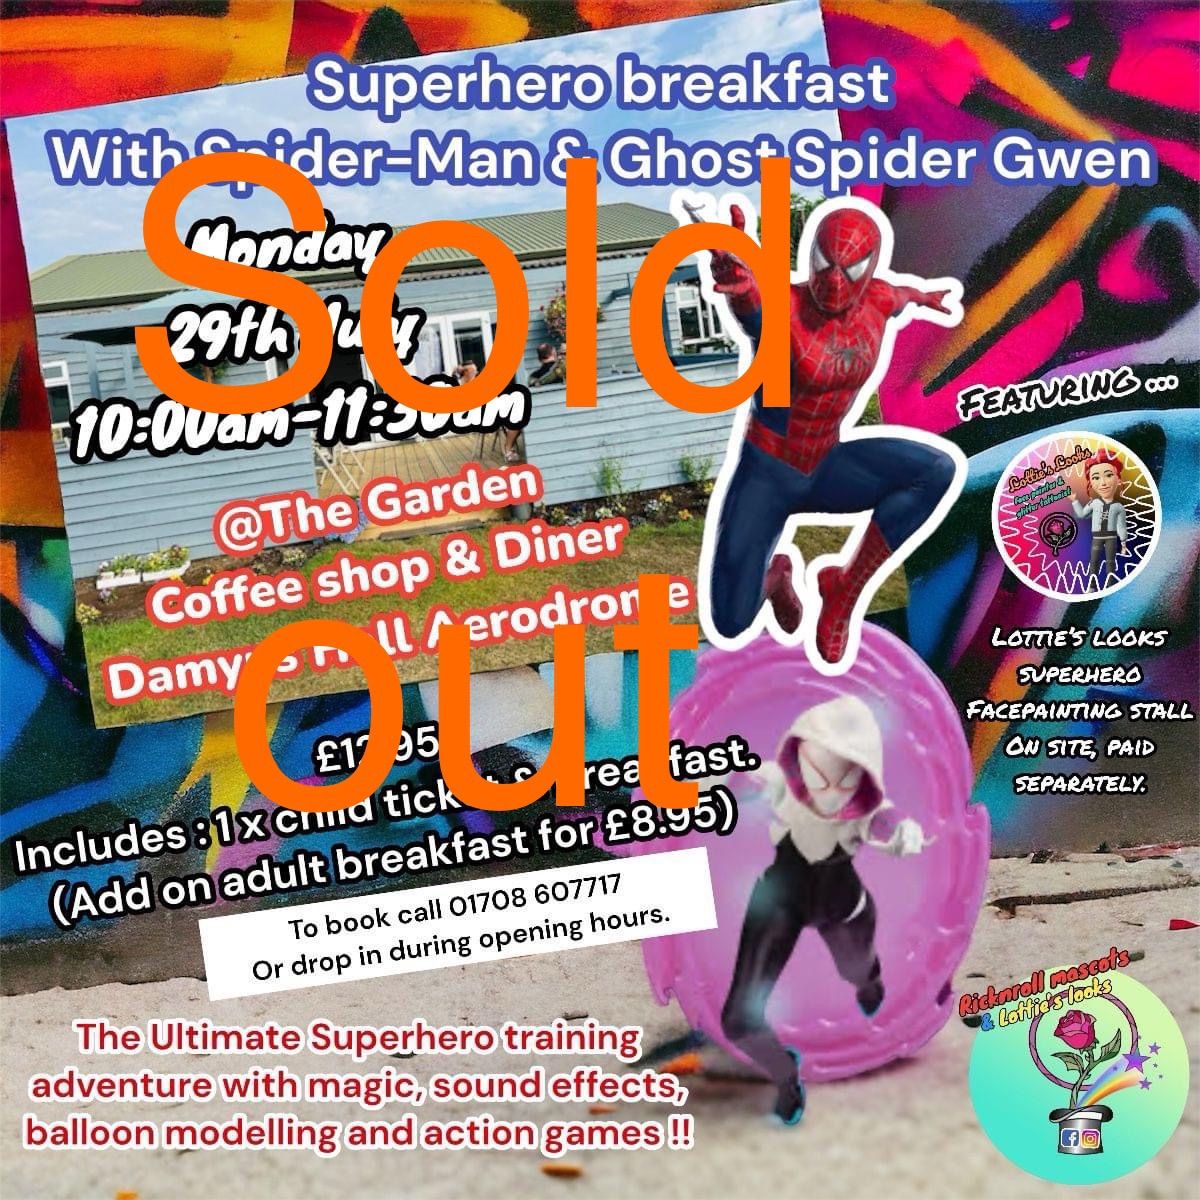 Super Hero Breakfast with Spider-Man & Ghost Spider Gwen